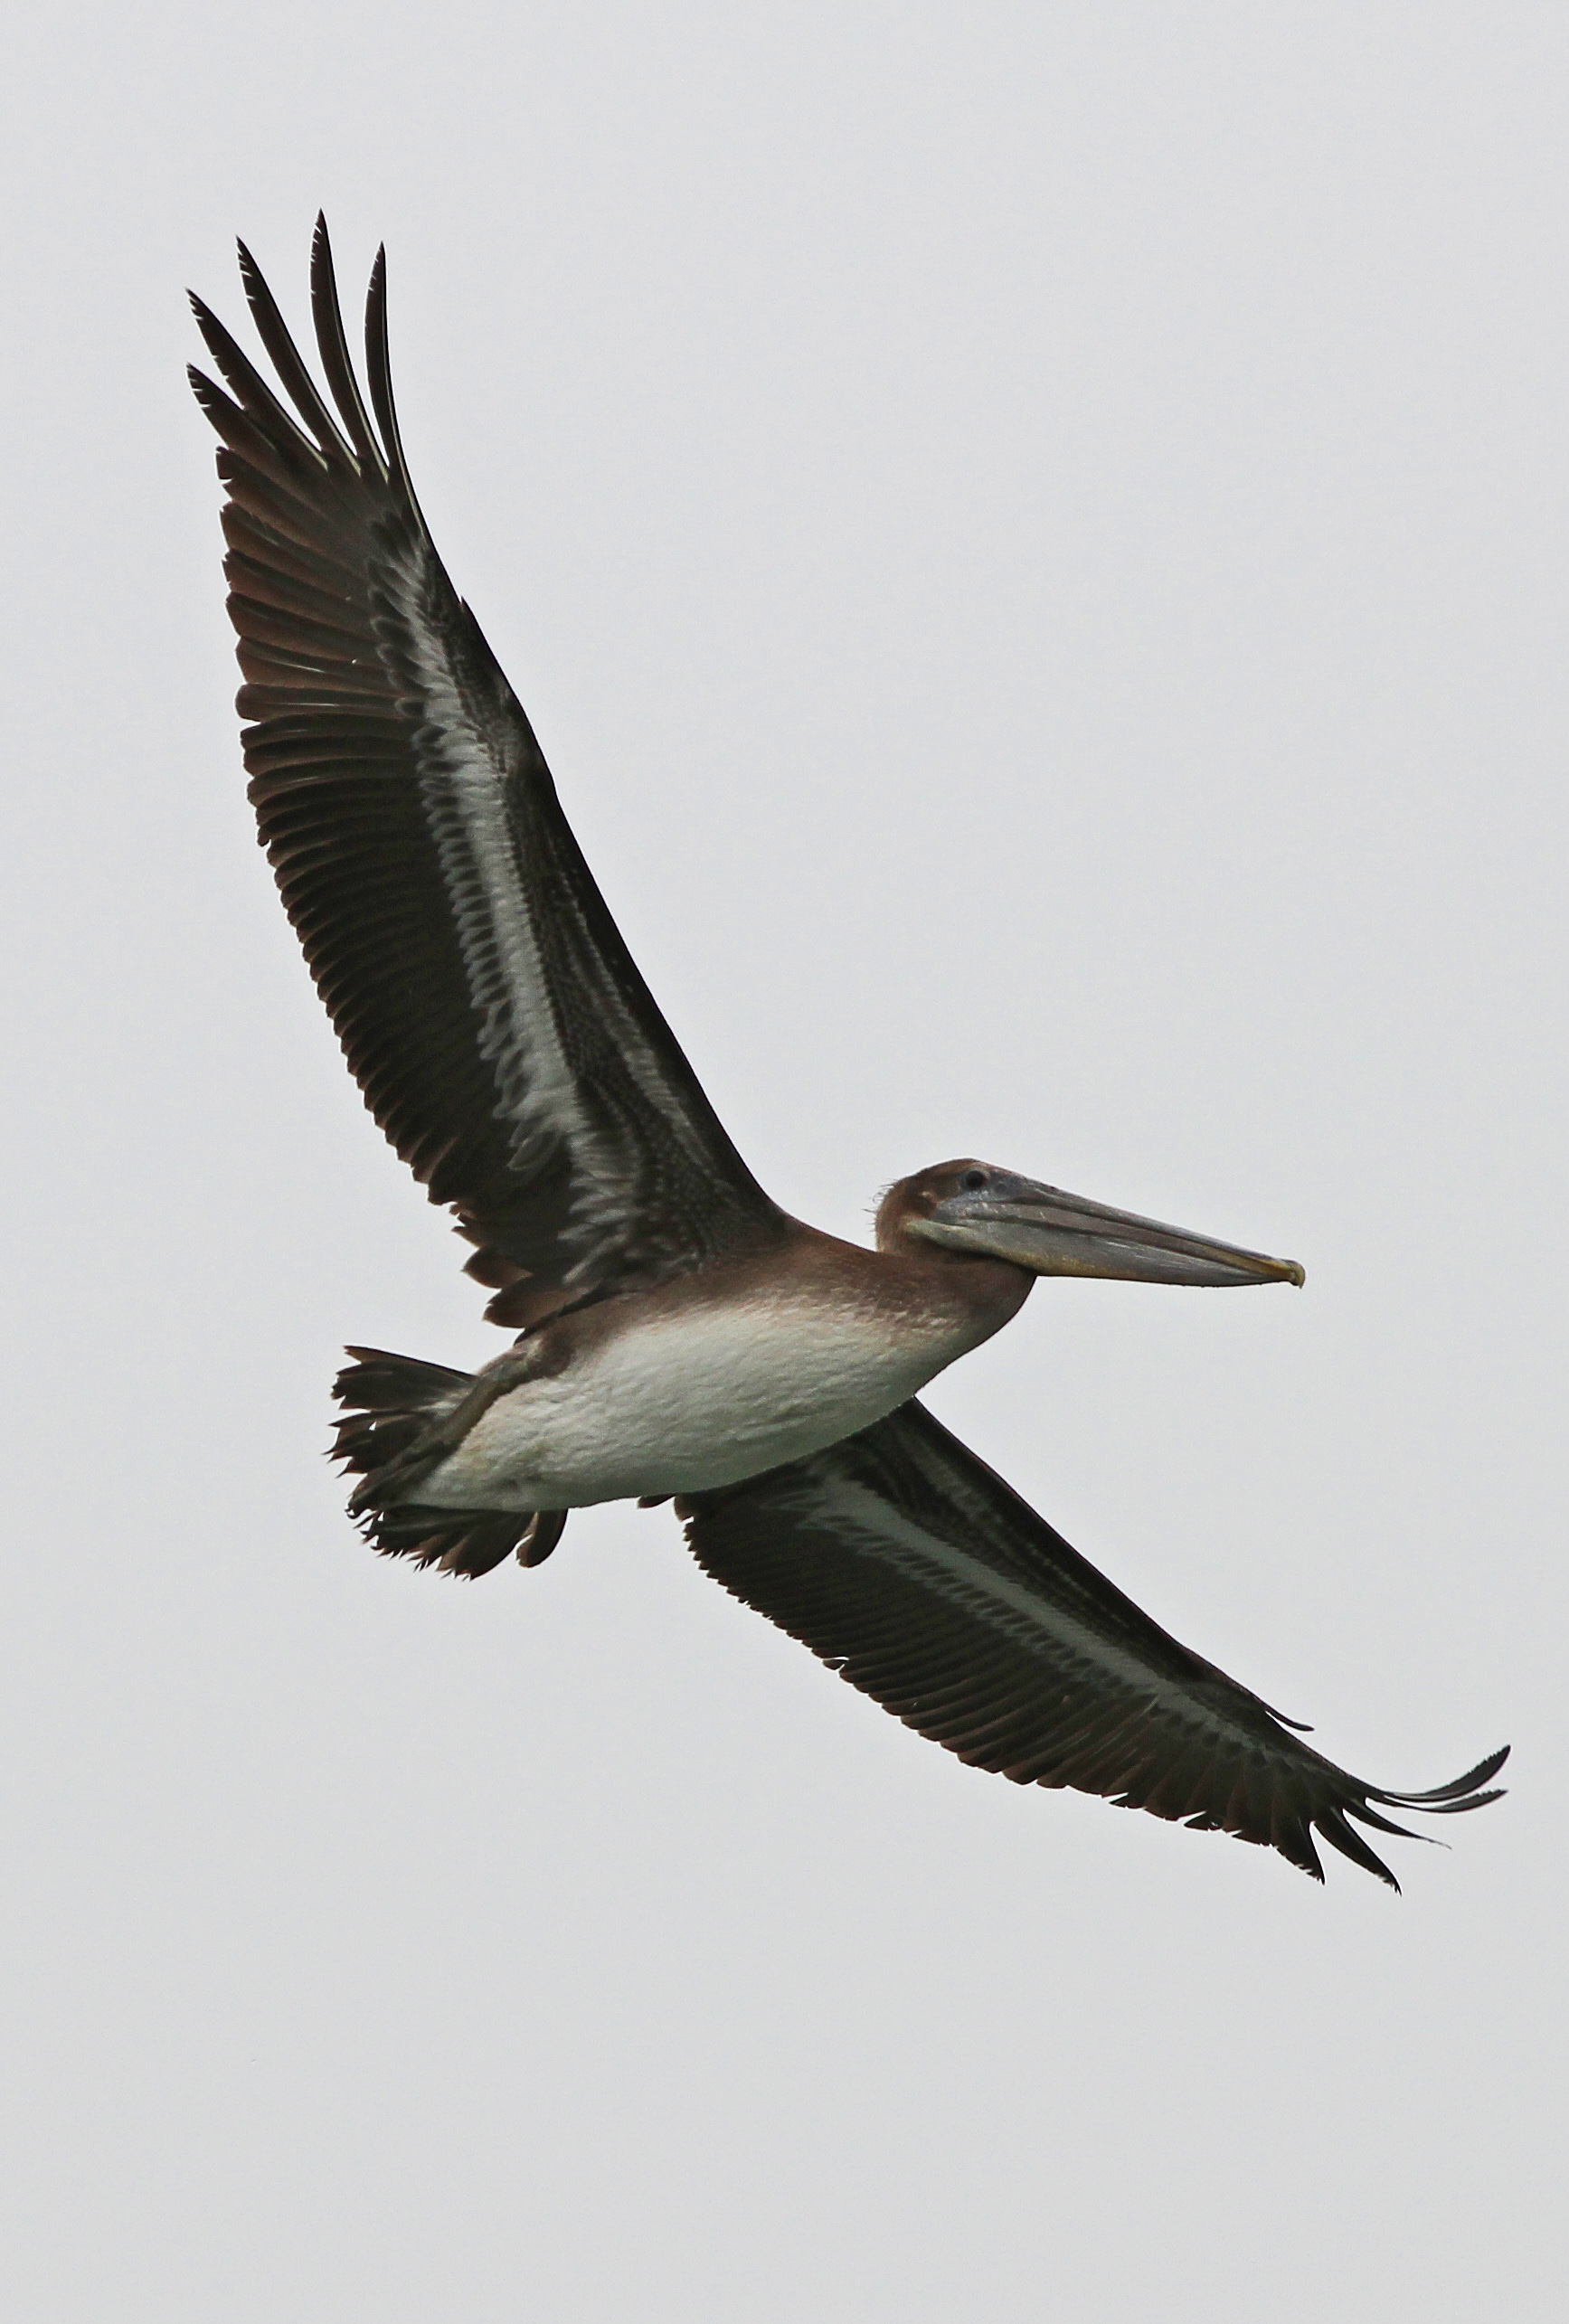 Brown Pelican - Pelecanus occidentalis, Moss Landing, California